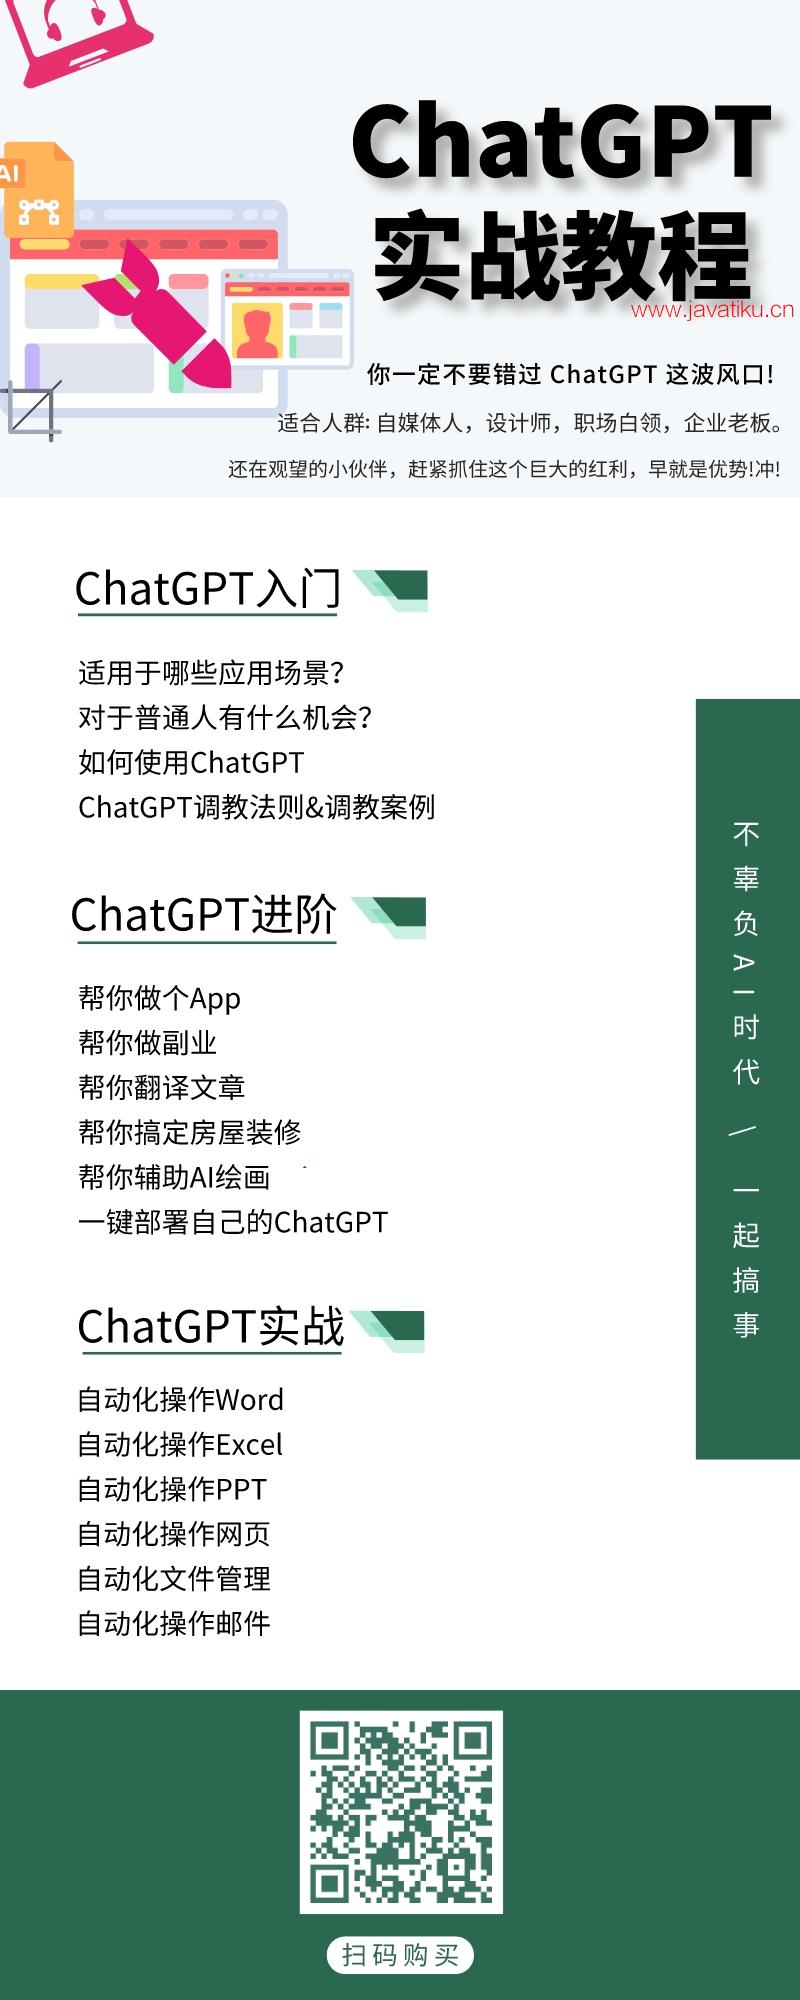 ChatGPT实战课程